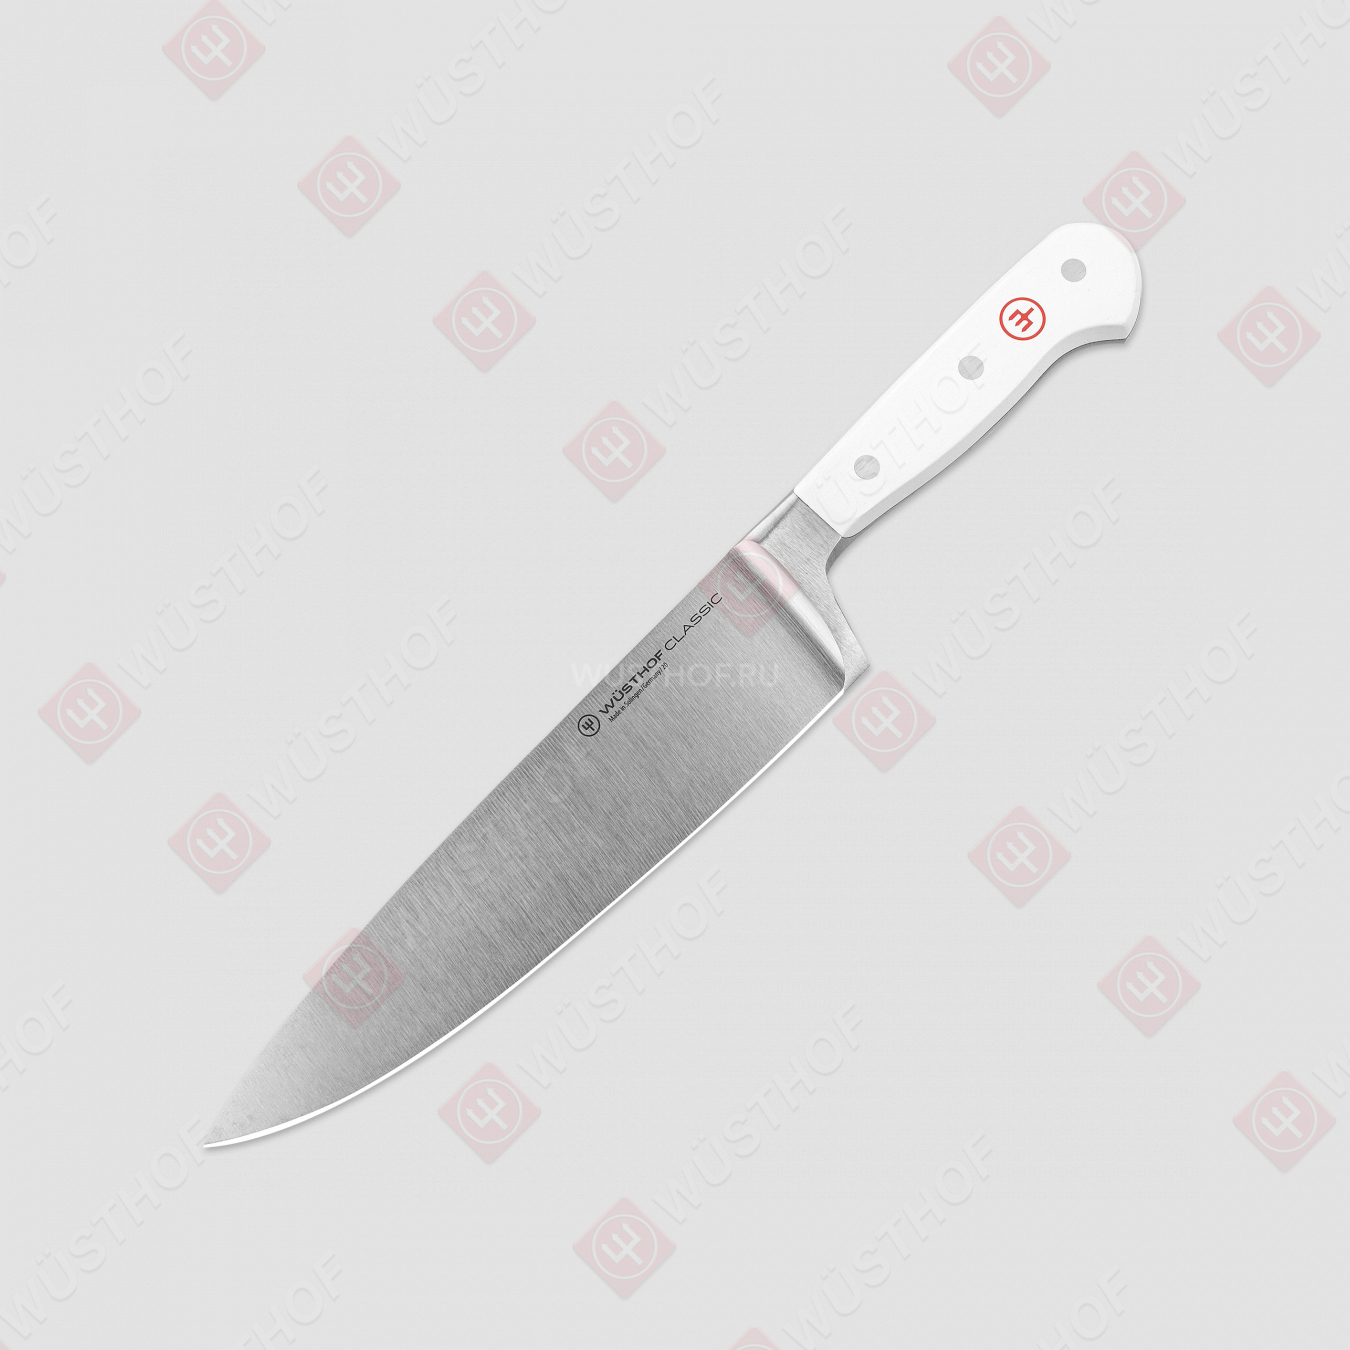 Профессиональный поварской кухонный нож «Шеф» 20 см, серия White Classic, WUESTHOF, Золинген, Германия